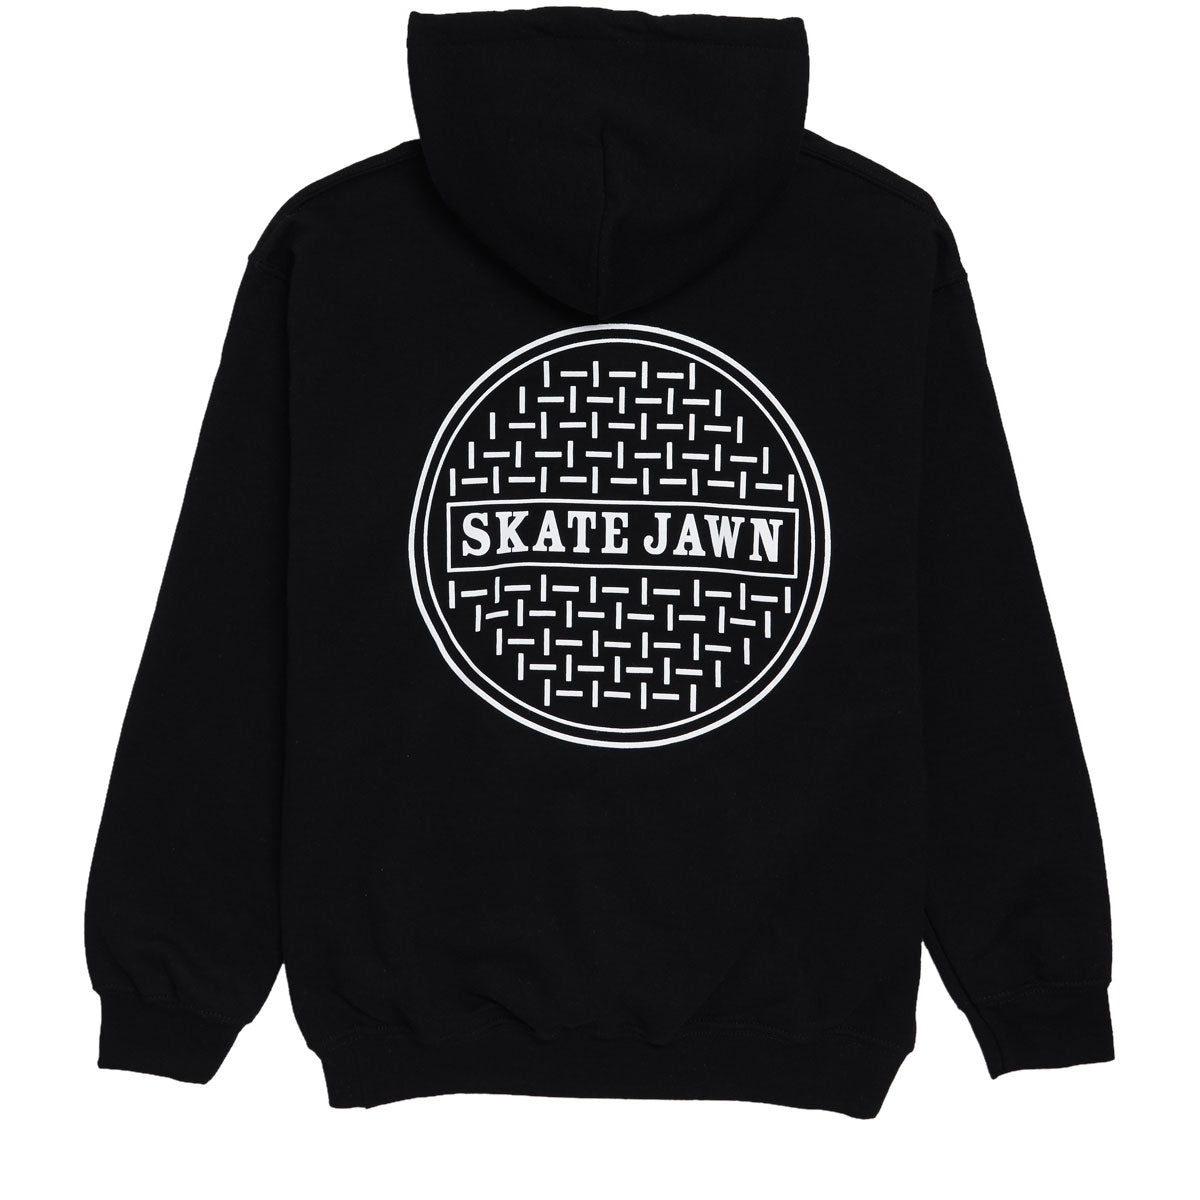 Skate Jawn Sewer Cap Hoodie - Black